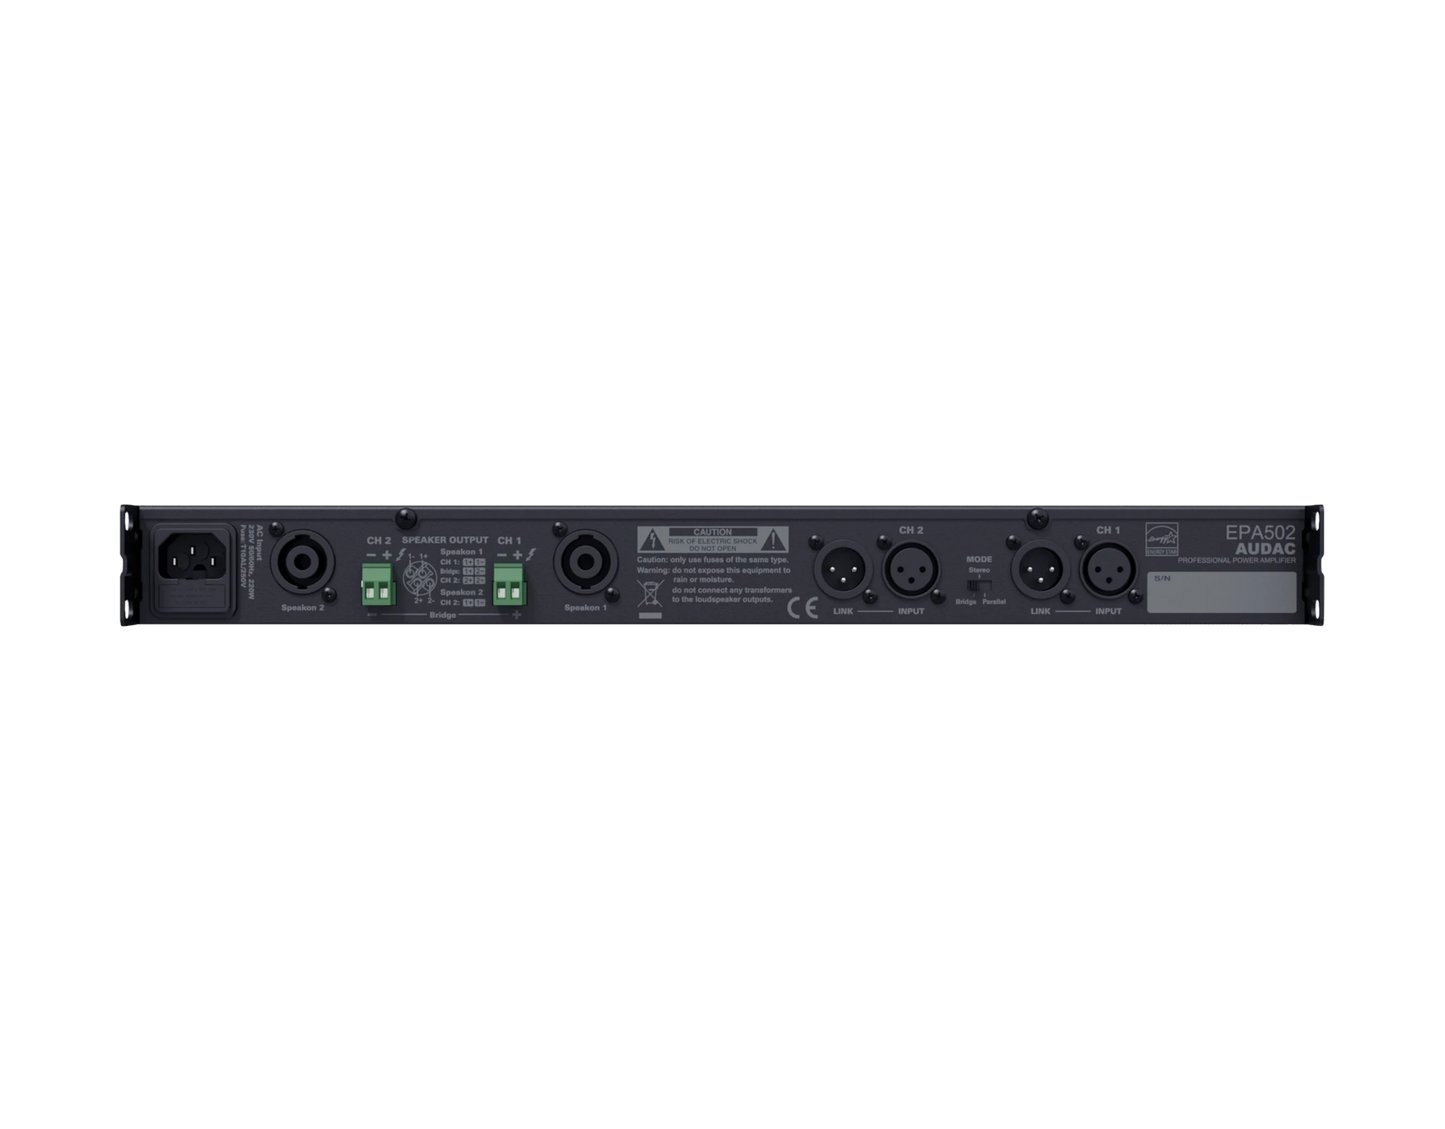 EPA502 Dual-channel Class-D amplifier 2 x 500W